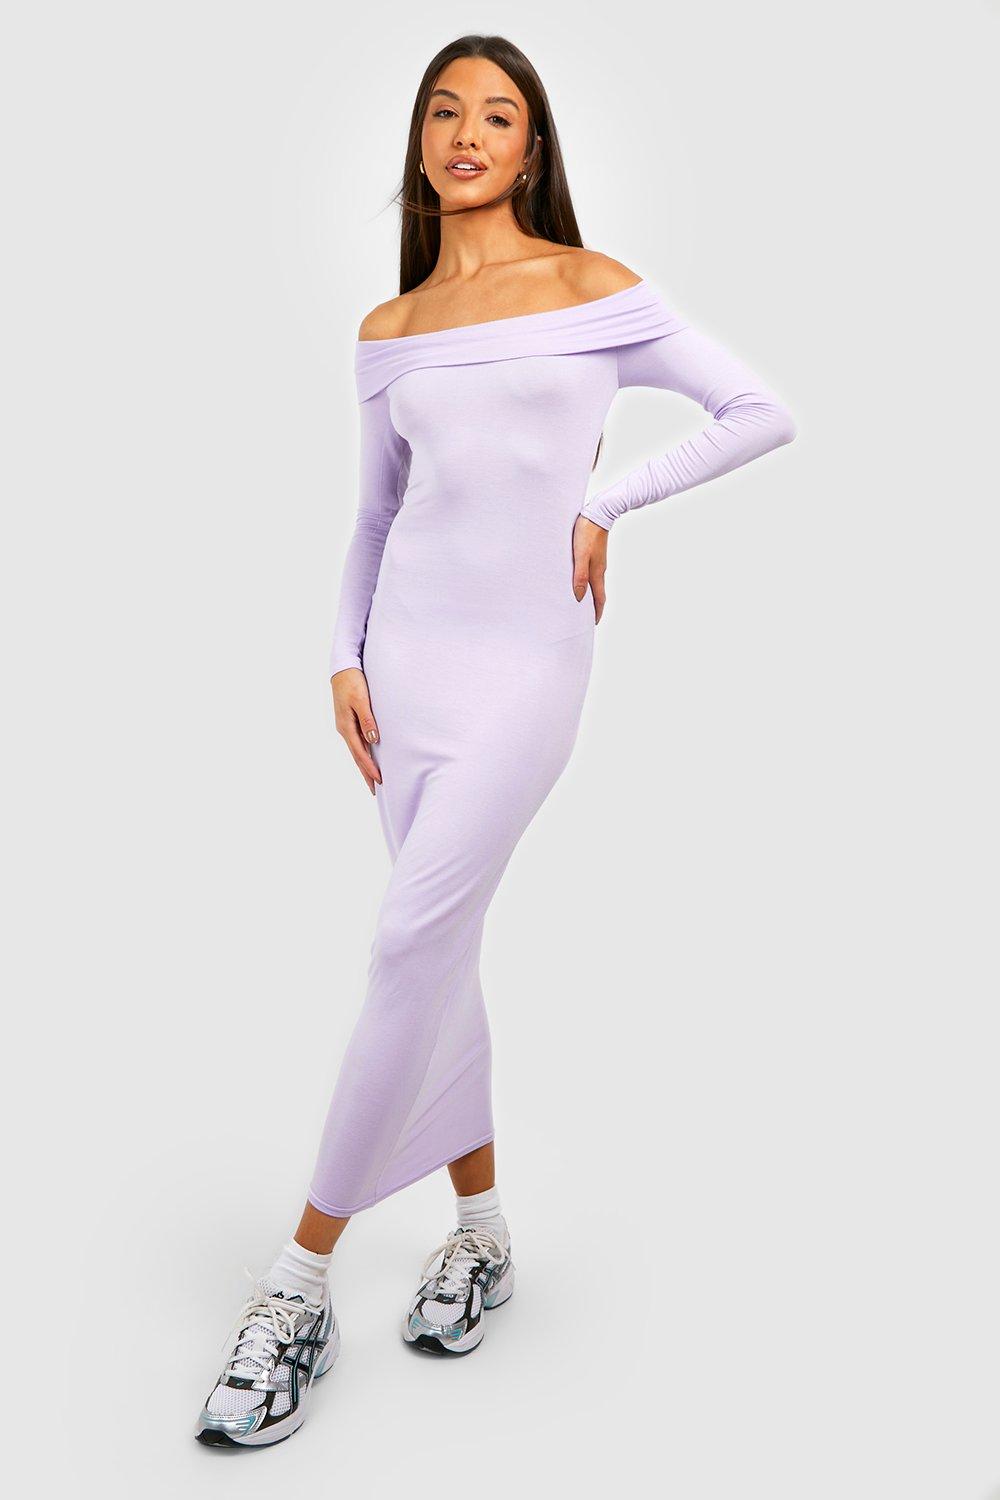 Bardot Long Sleeve Midaxi Dress